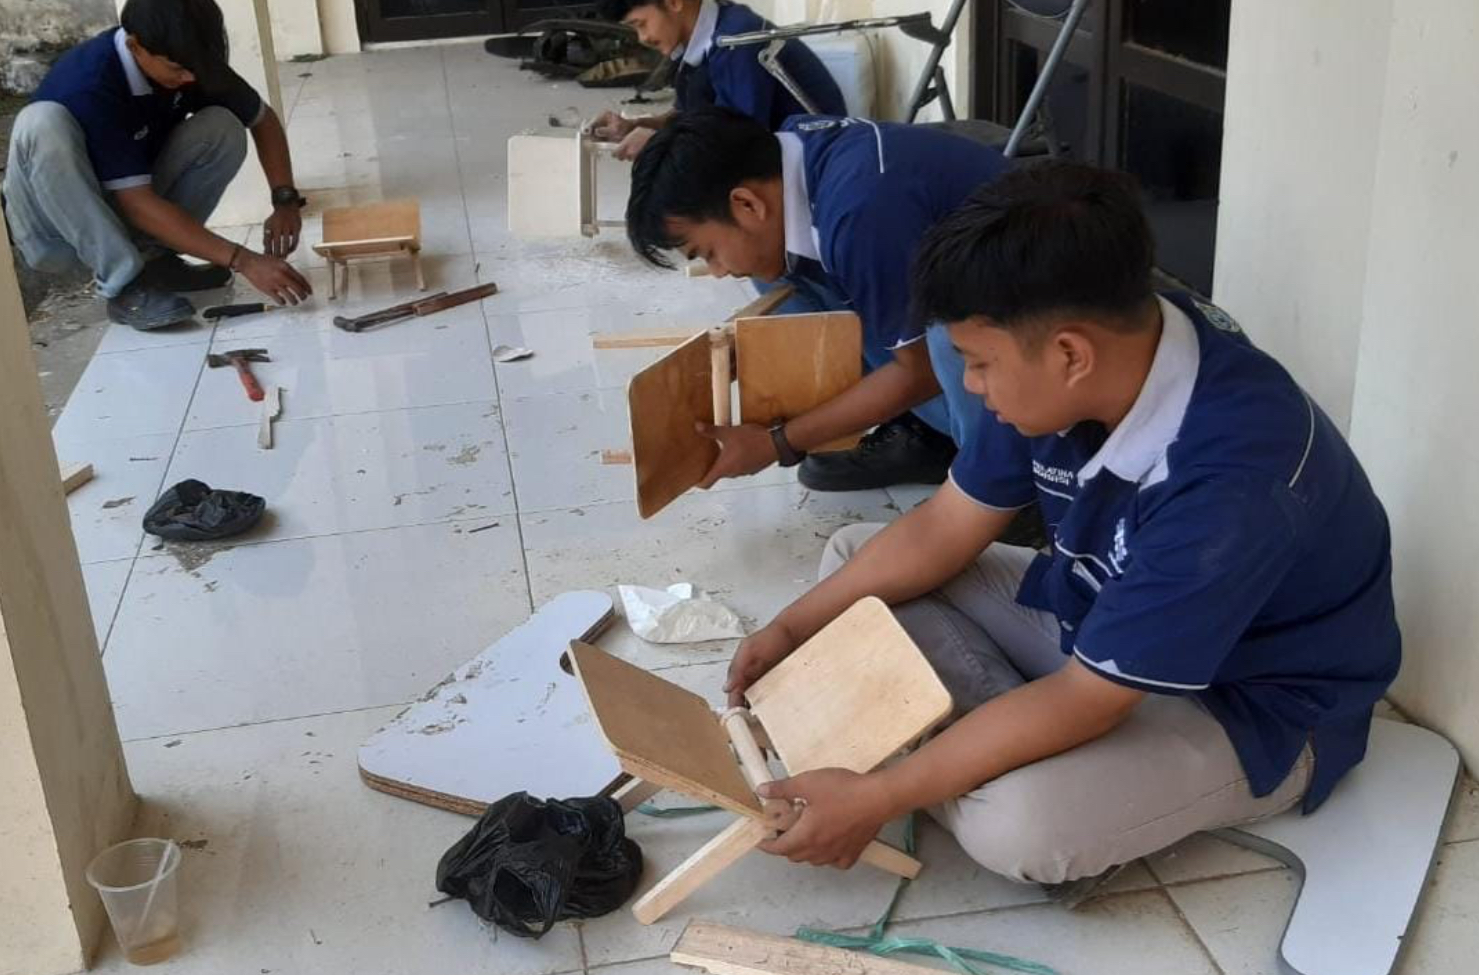 16 Peserta Ikuti Pelatihan di BLK Kota Banjar, Bakal Dapat Sertifikat Kompeten 